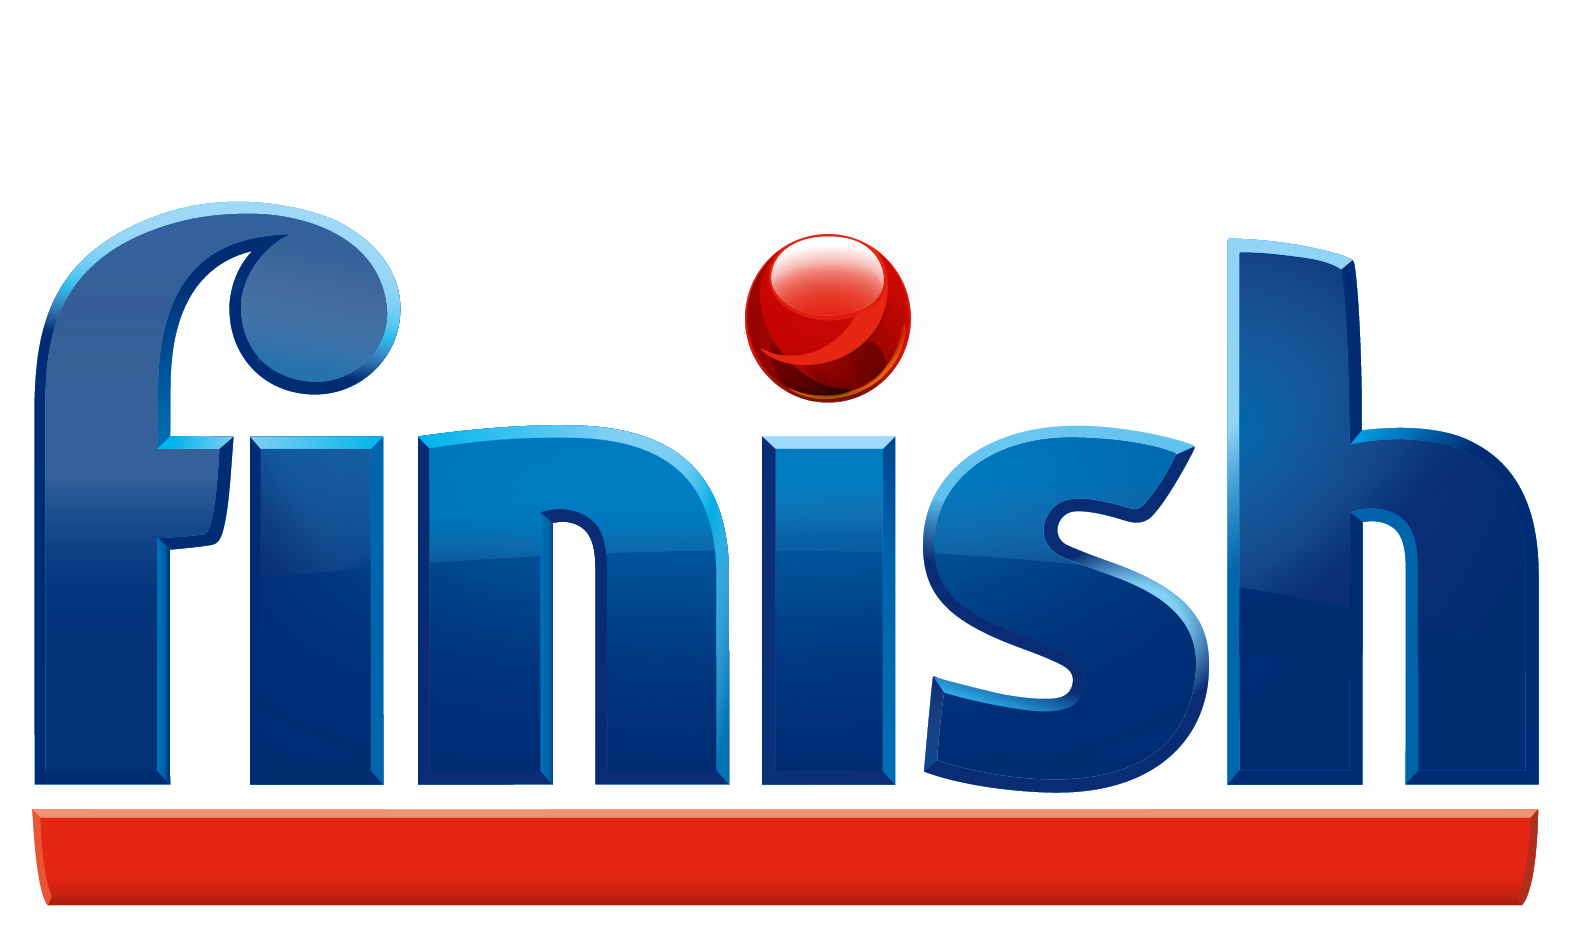 Finish_Logo